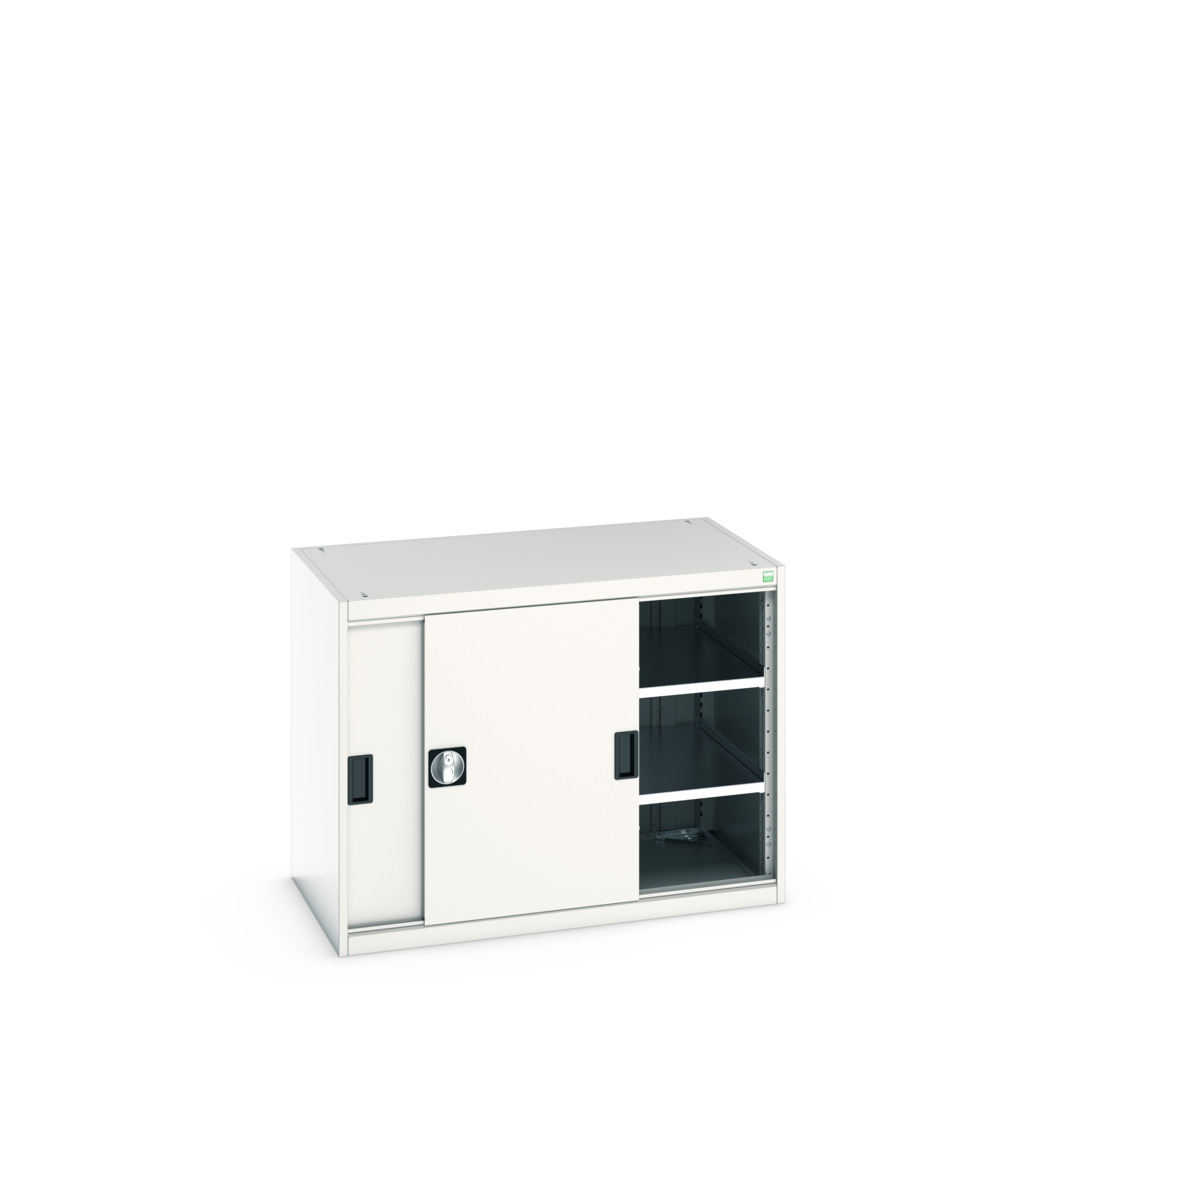 40021137.16V - cubio cupboard